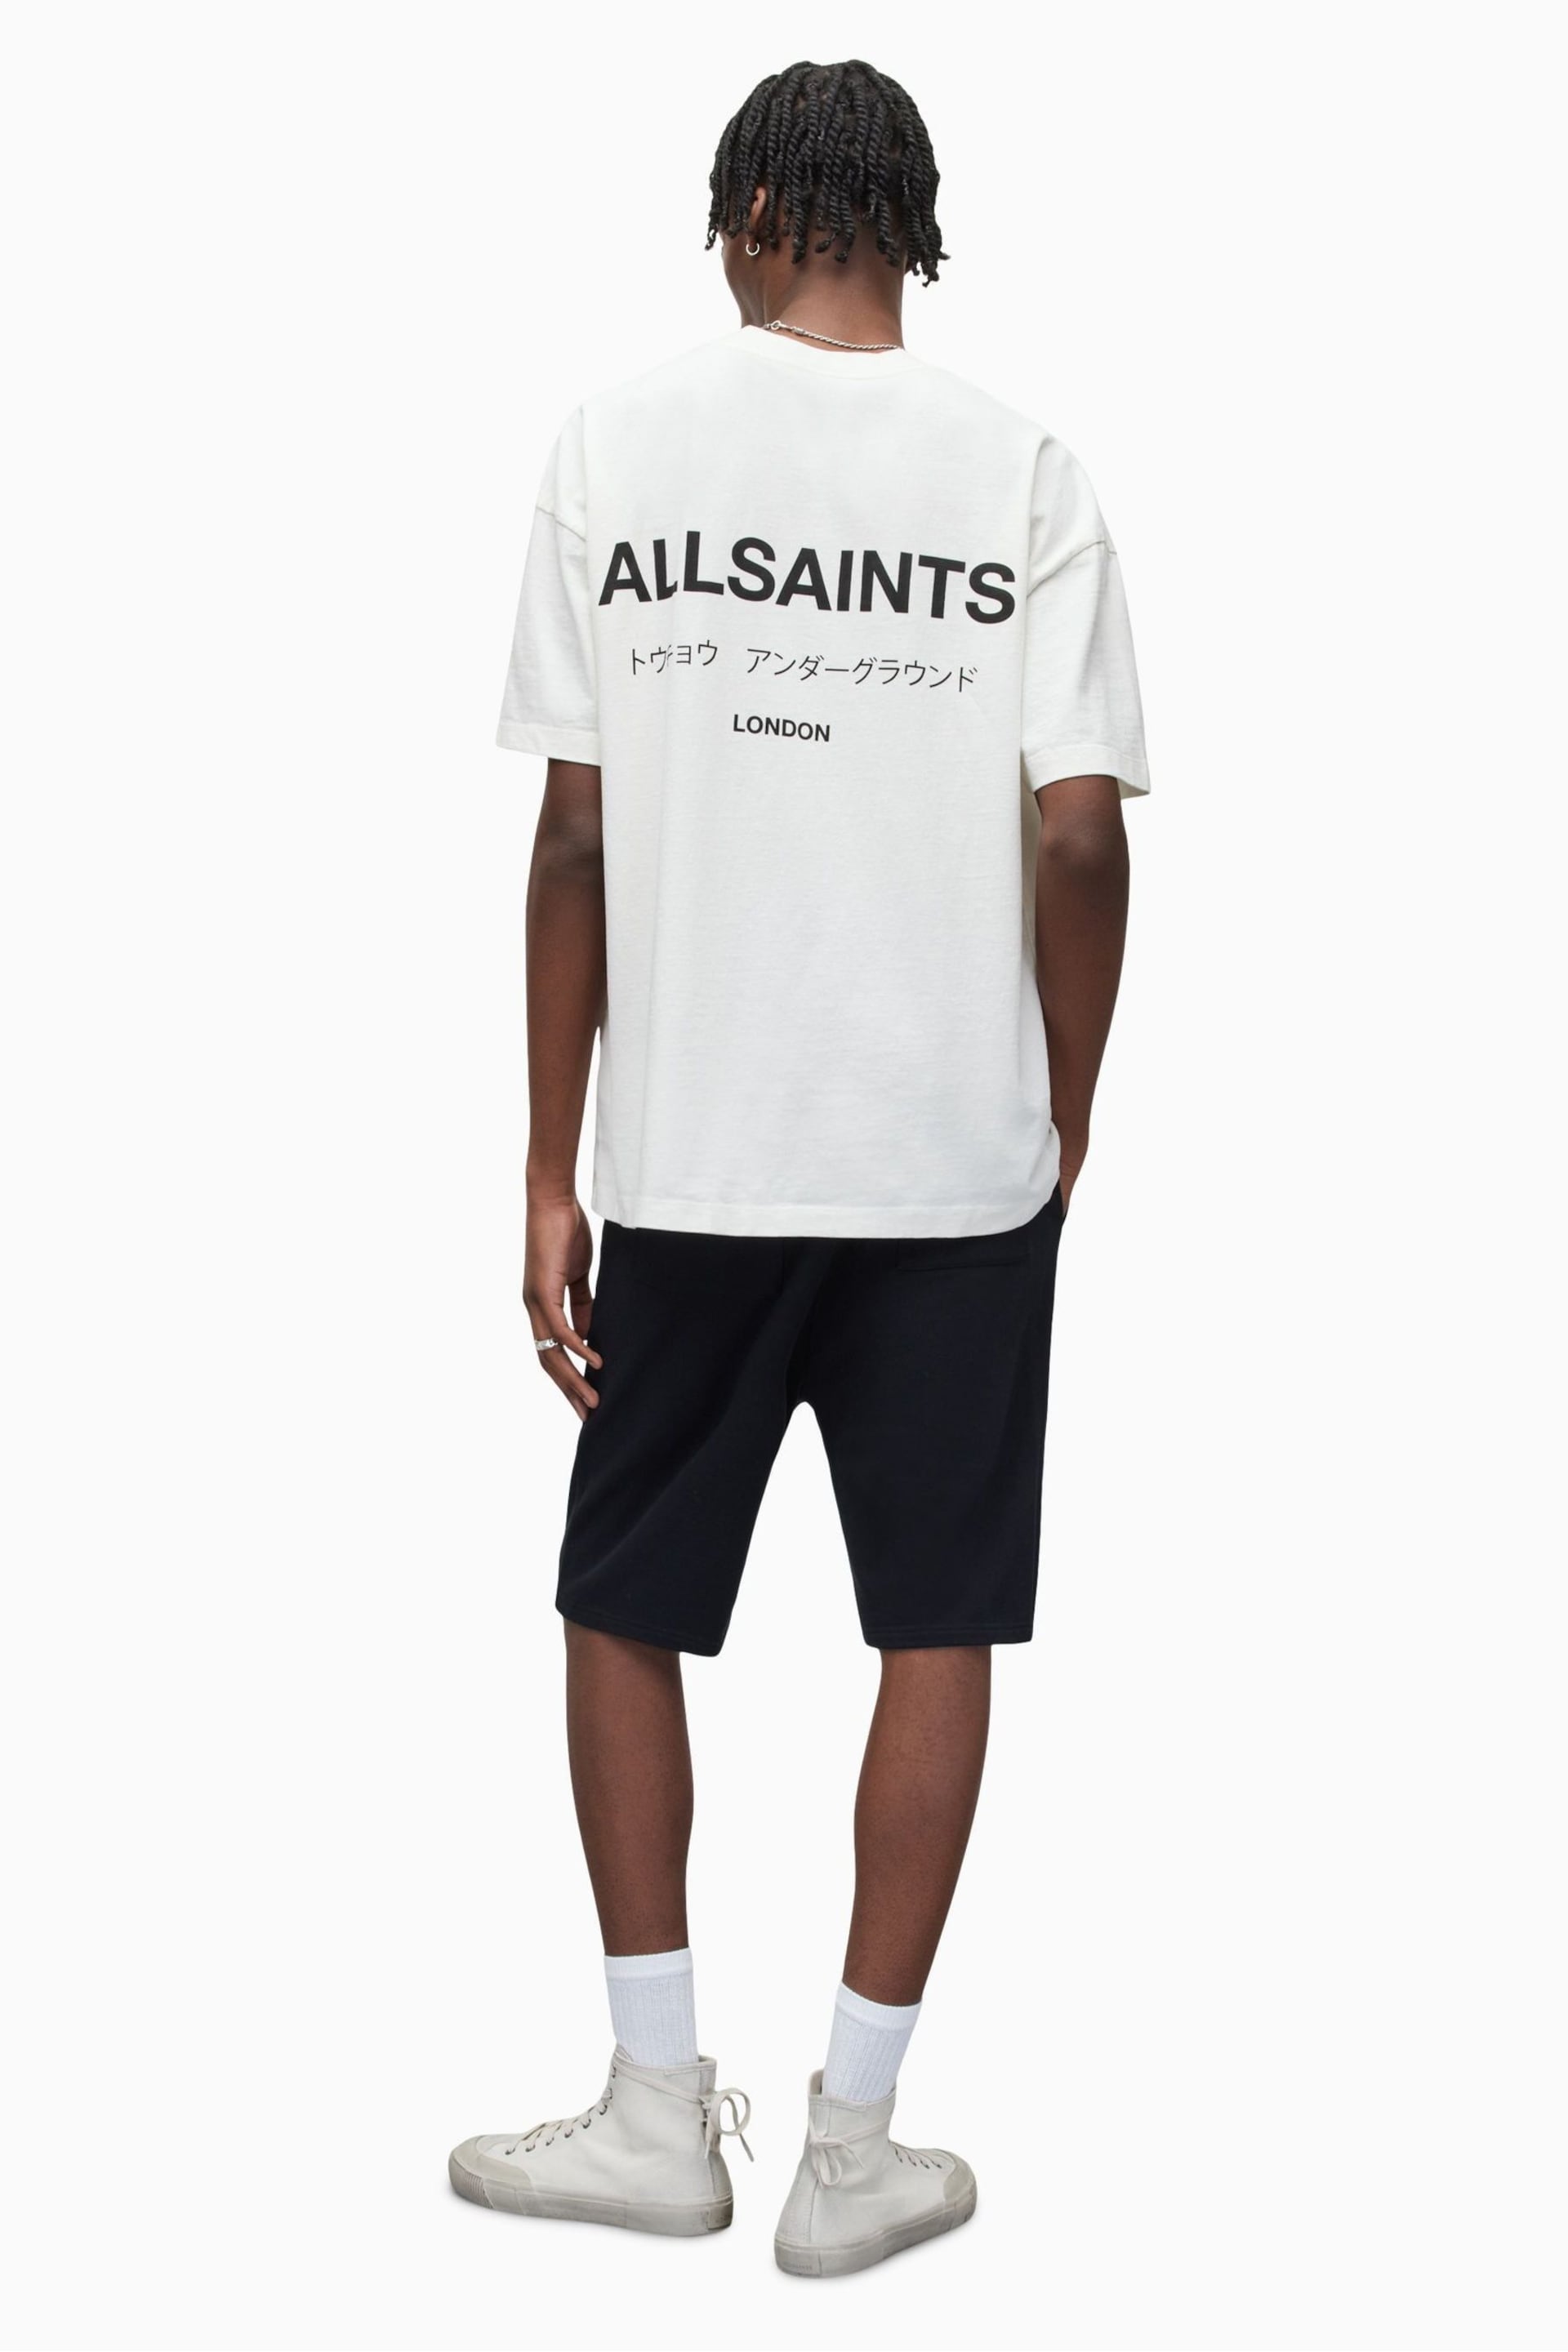 AllSaints Black Underground Sweat Shorts - Image 3 of 6